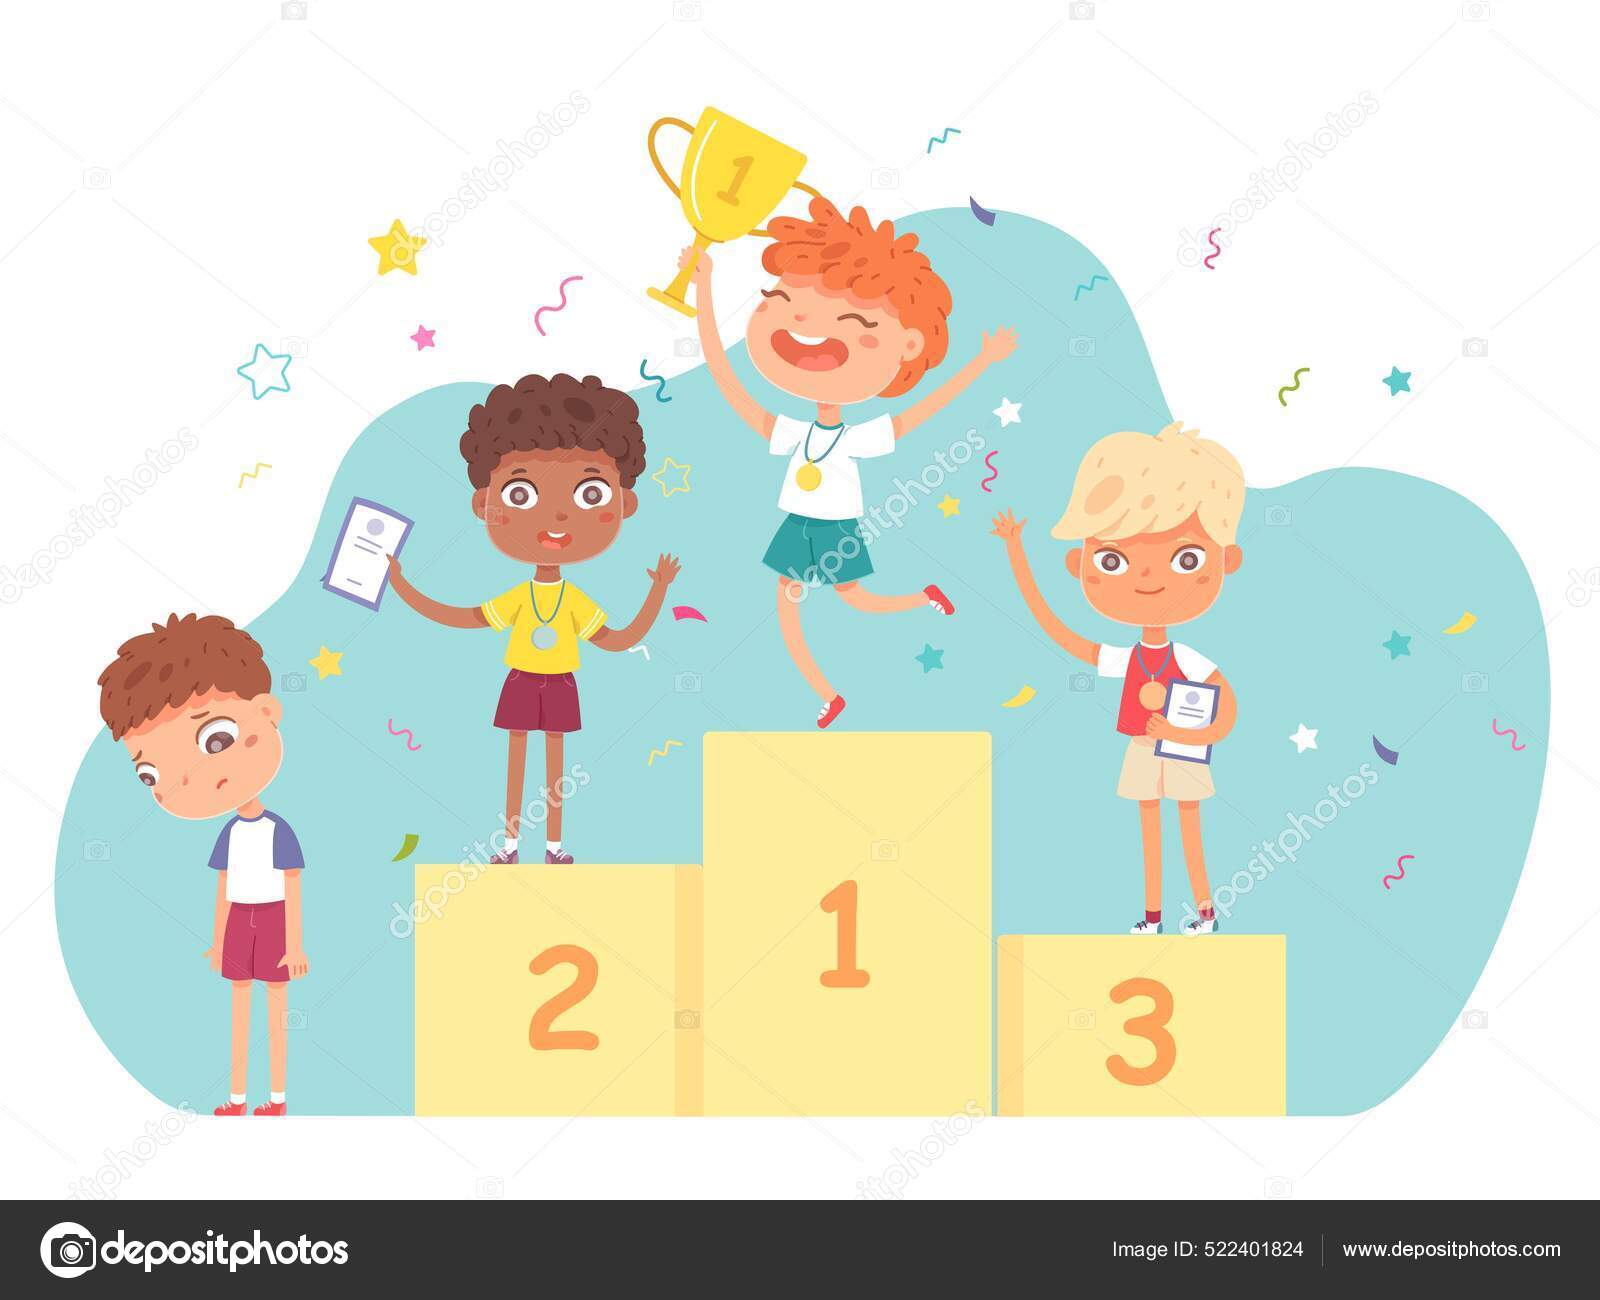 les enfants avec des médailles tenant le trophée de la coupe d'or debout  sur le podium ou le piédestal des gagnants avec les premier, deuxième et  troisième prix célébrant la compétition gagnante